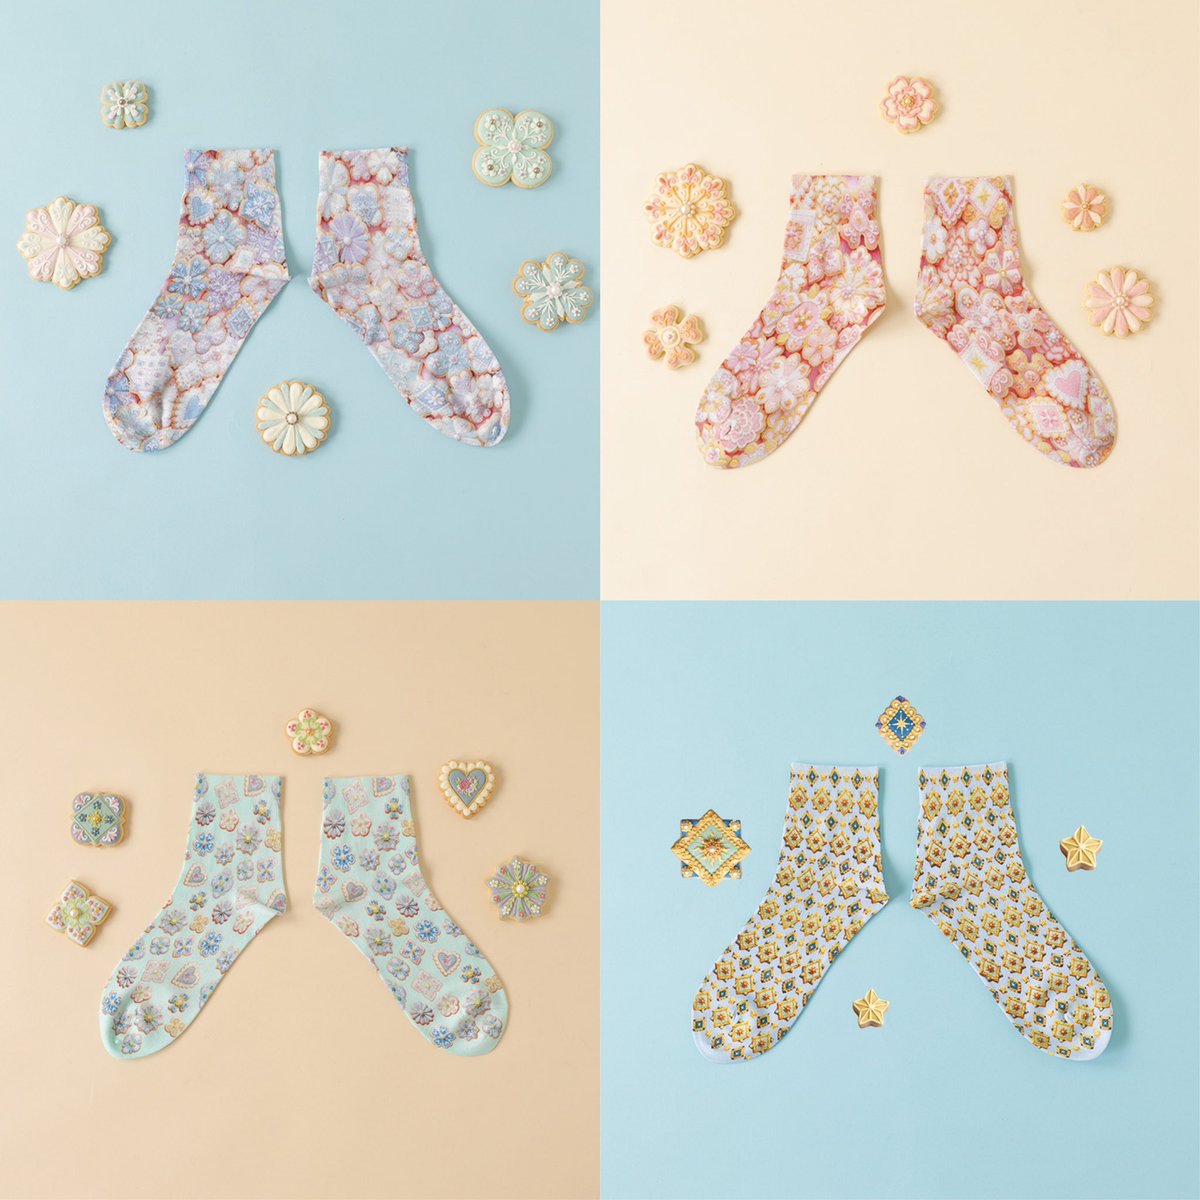 ✴︎ Tabio x KUNIKA ✴︎ 💠 Collaboration Socks vol.3 💠 宝石のブローチのようなアイシングクッキーが散りばめられたプリントソックスが誕生しました🫧 📍発売日 🇯🇵3月8日(金) 🇬🇧3月15日(金) 詳細はこちらをご覧ください▶︎ tabio.com/jp/kunika_tabi…